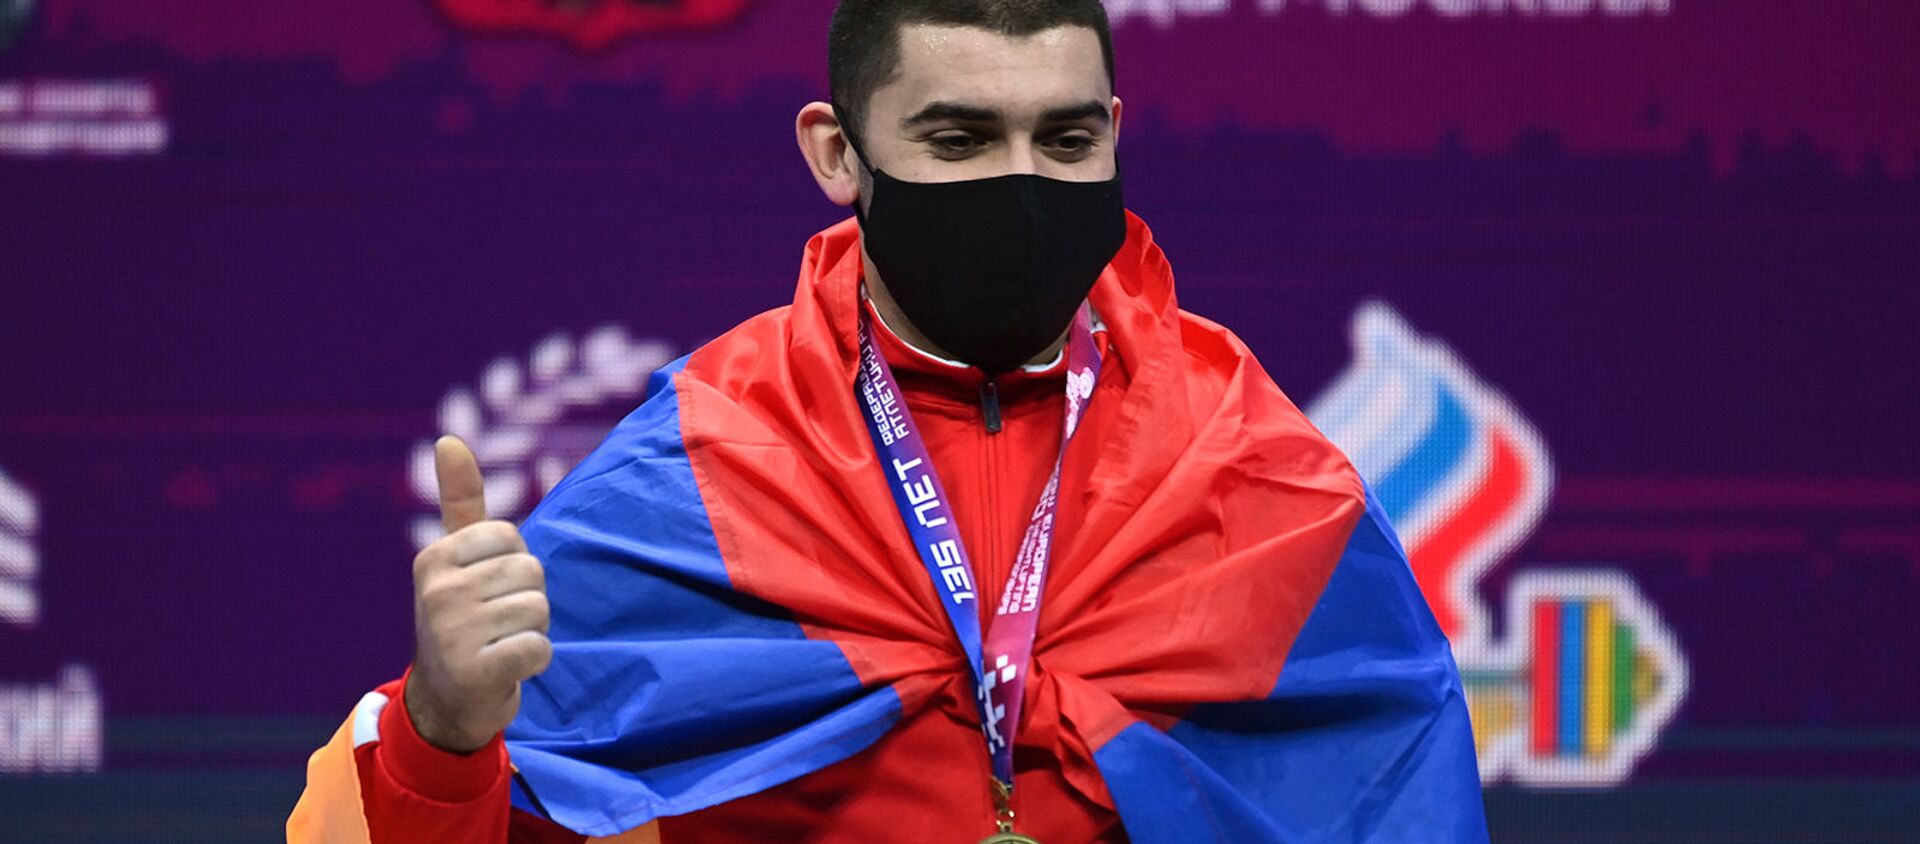 Тяжелоатлет Карен Авагян, завоевавший золотую медаль в соревнованиях среди мужчин в весовой категории до 89 кг на чемпионате Европы по тяжелой атлетике, на церемонии награждения (8 апреля 2021). Москвa - Sputnik Արմենիա, 1920, 08.04.2021